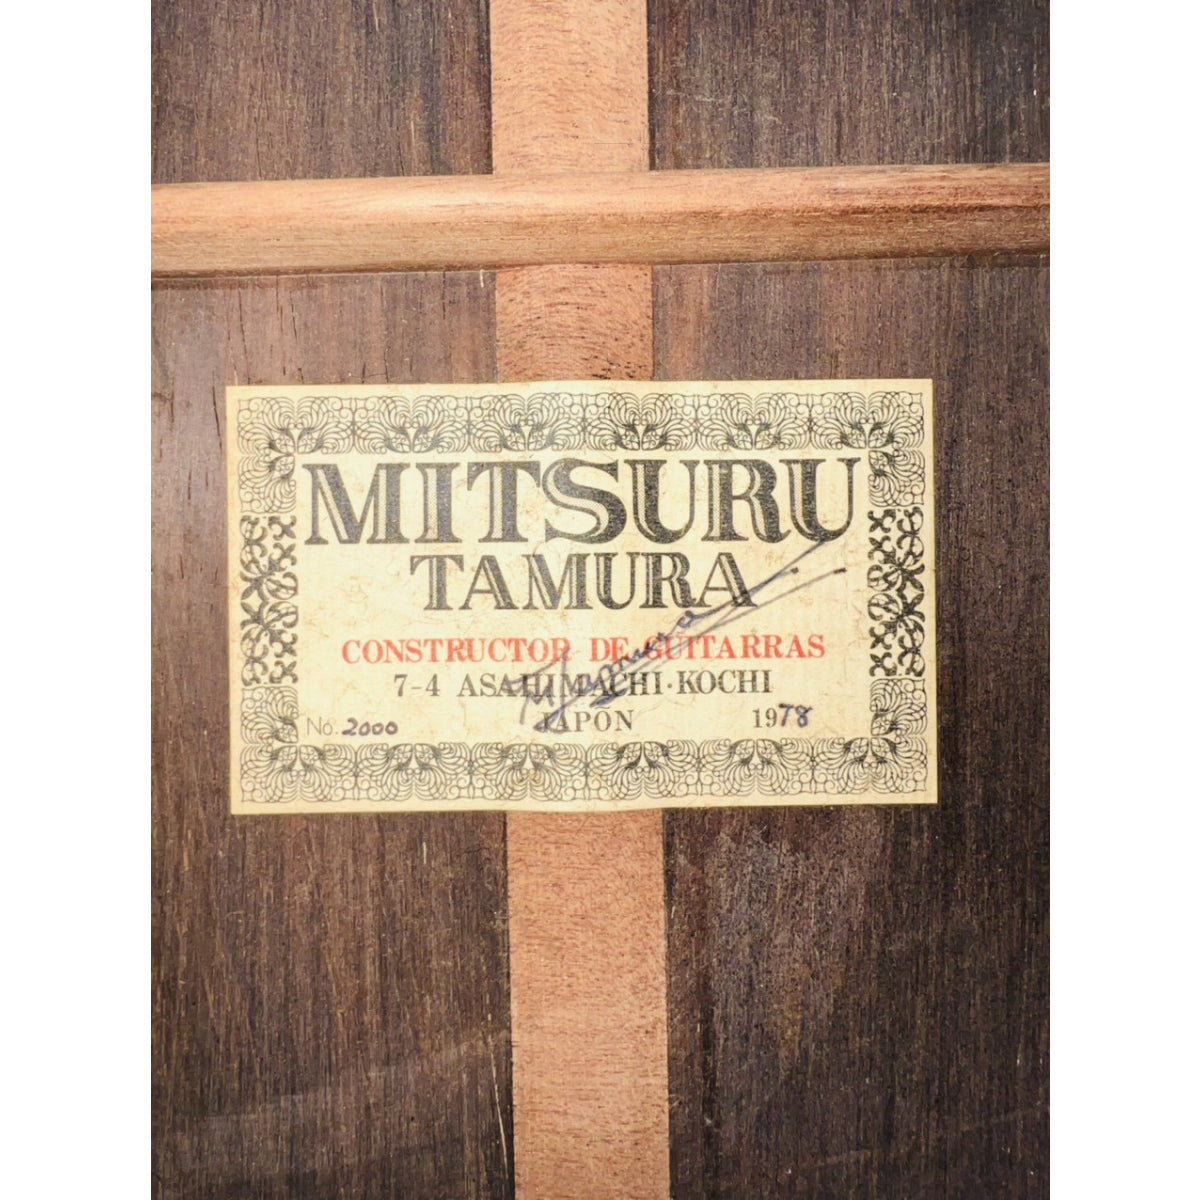 Đàn Guitar Classic Mitsuru Tamura No2000 1978 - Qua Sử Dụng - Việt Music